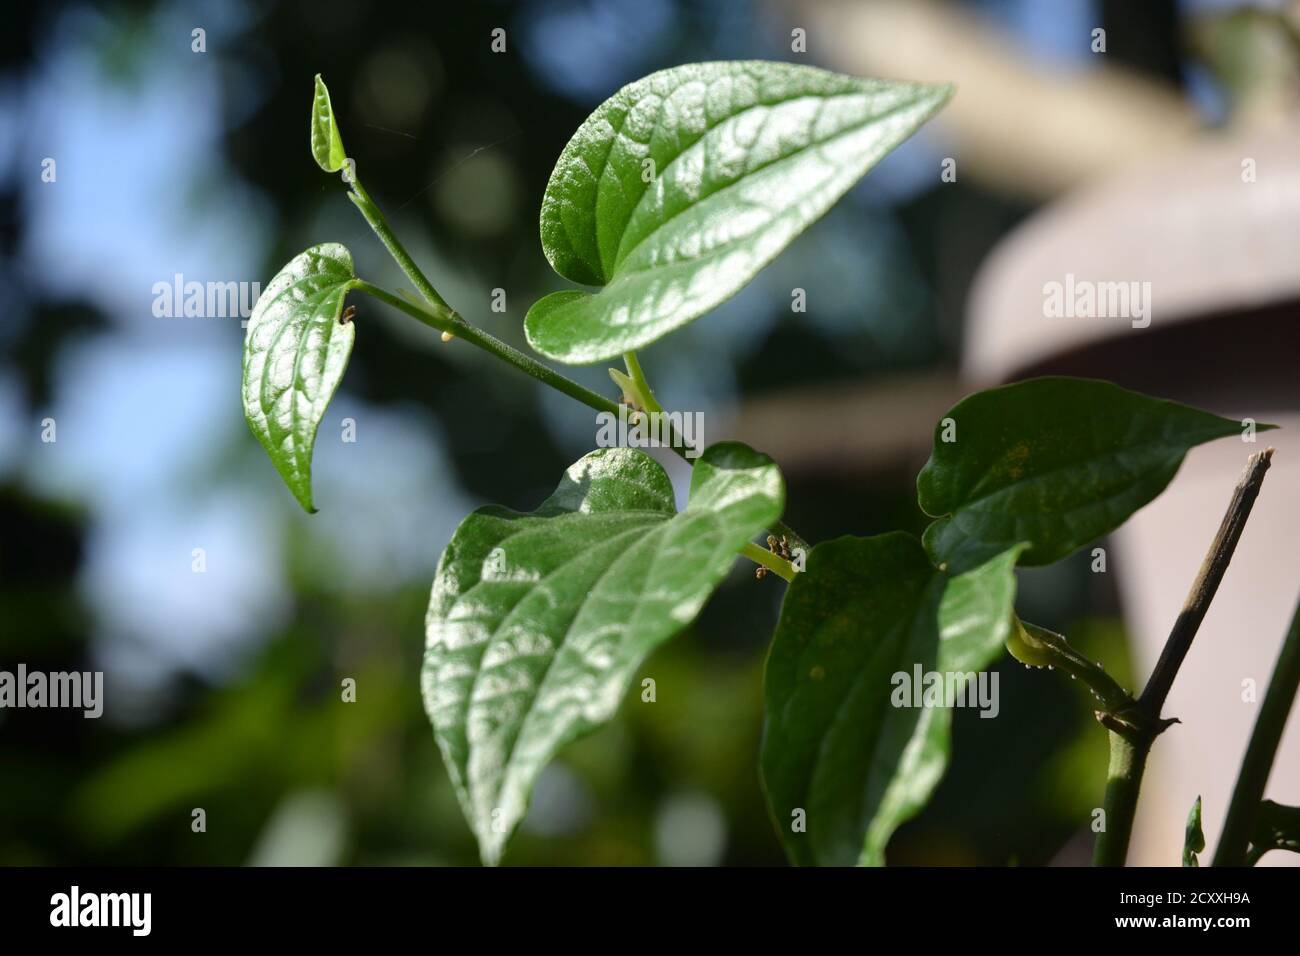 Eine grüne Betelpflanze mit hellen Blättern sieht schön aus. Betelblätter werden als Mundfrischer und pflanzliche Zwecke in südasiatischen Ländern verwendet. Stockfoto